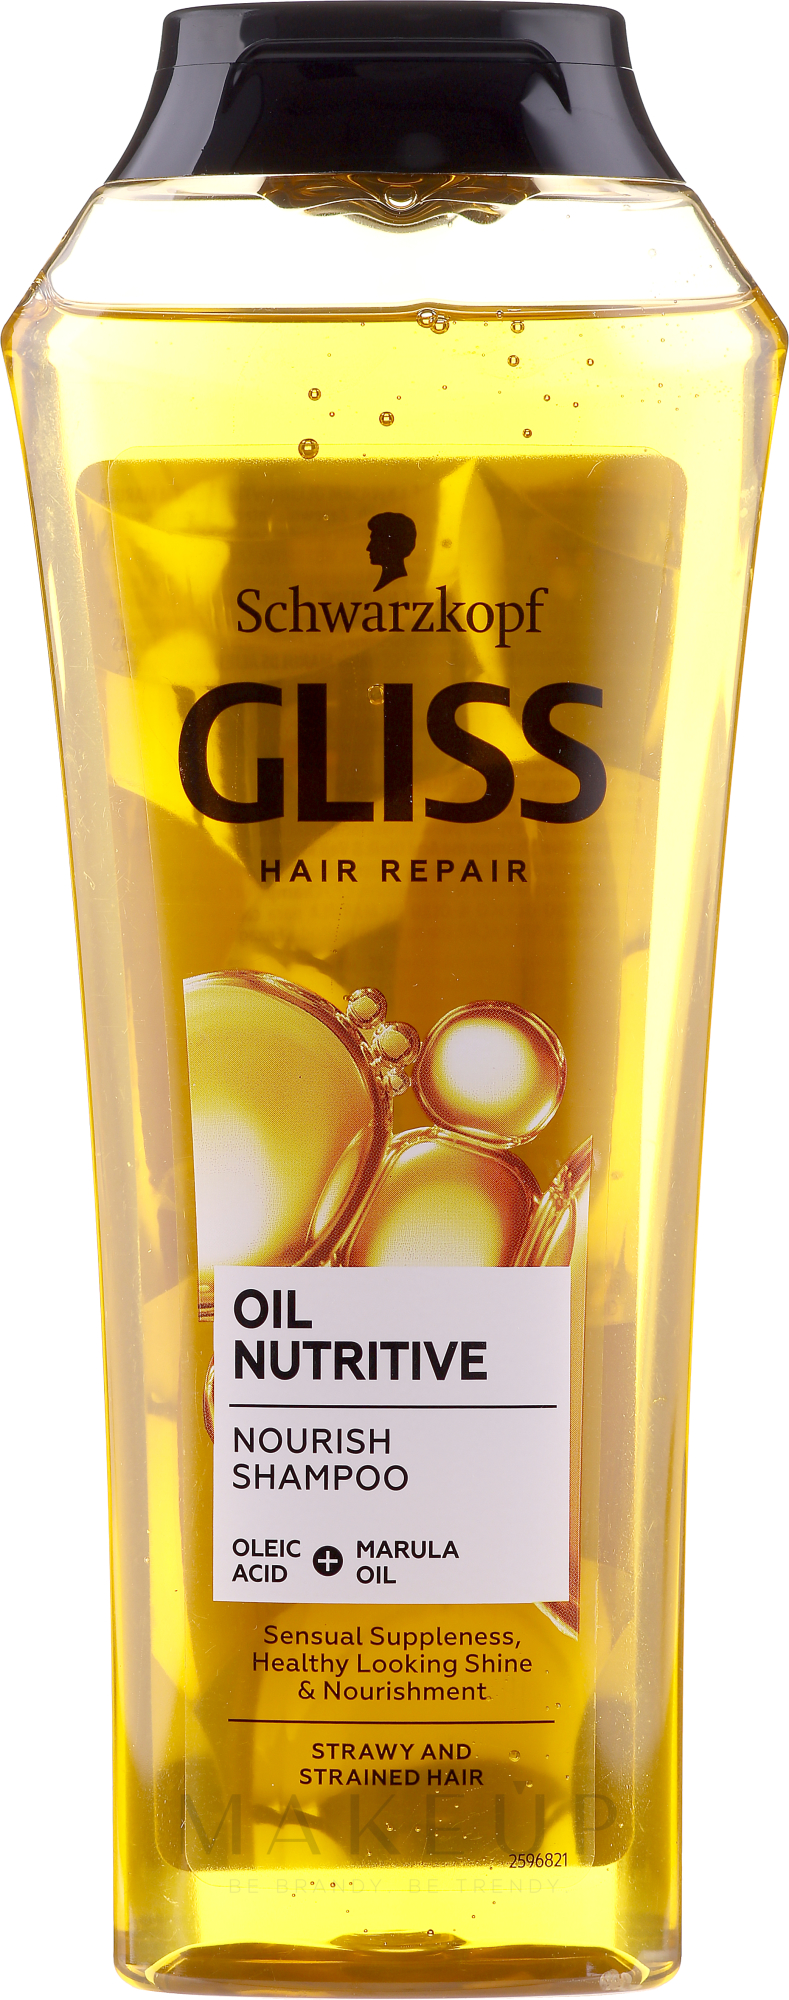 Reparierendes Shampoo für strohiges, splissanfälliges Haar - Gliss Kur Oil Nutritive Shampoo — Foto 250 ml